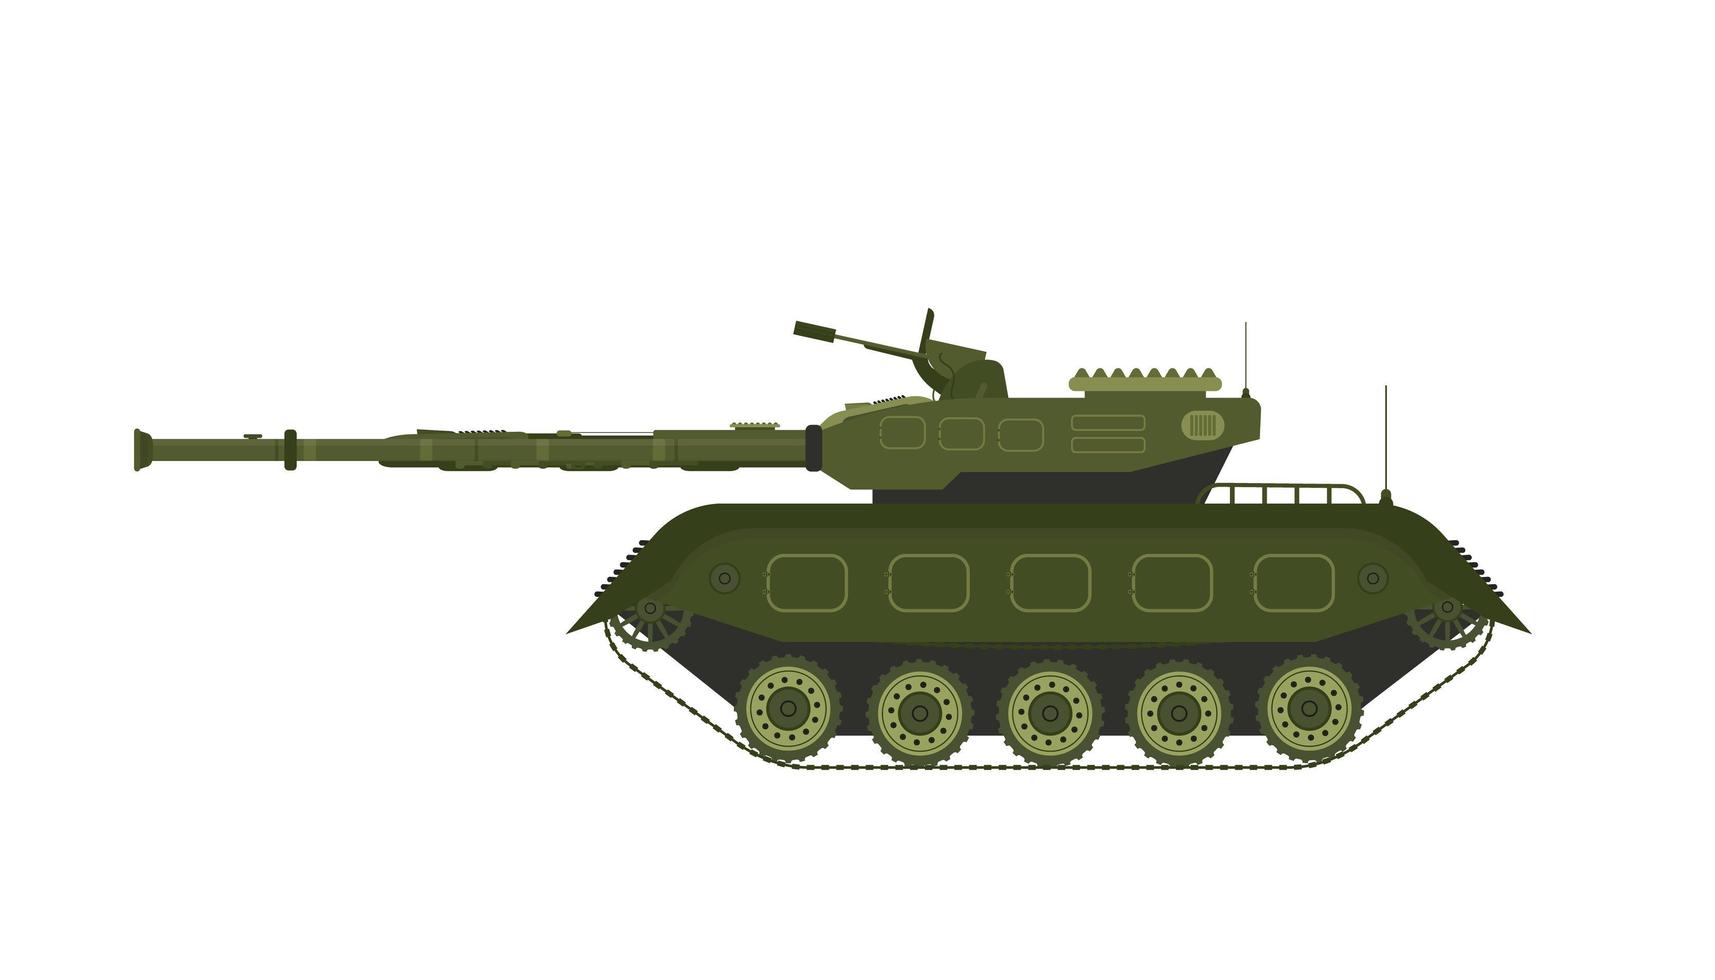 corazzata militare per il trasporto di personale. illustrazione vettoriale su sfondo bianco.